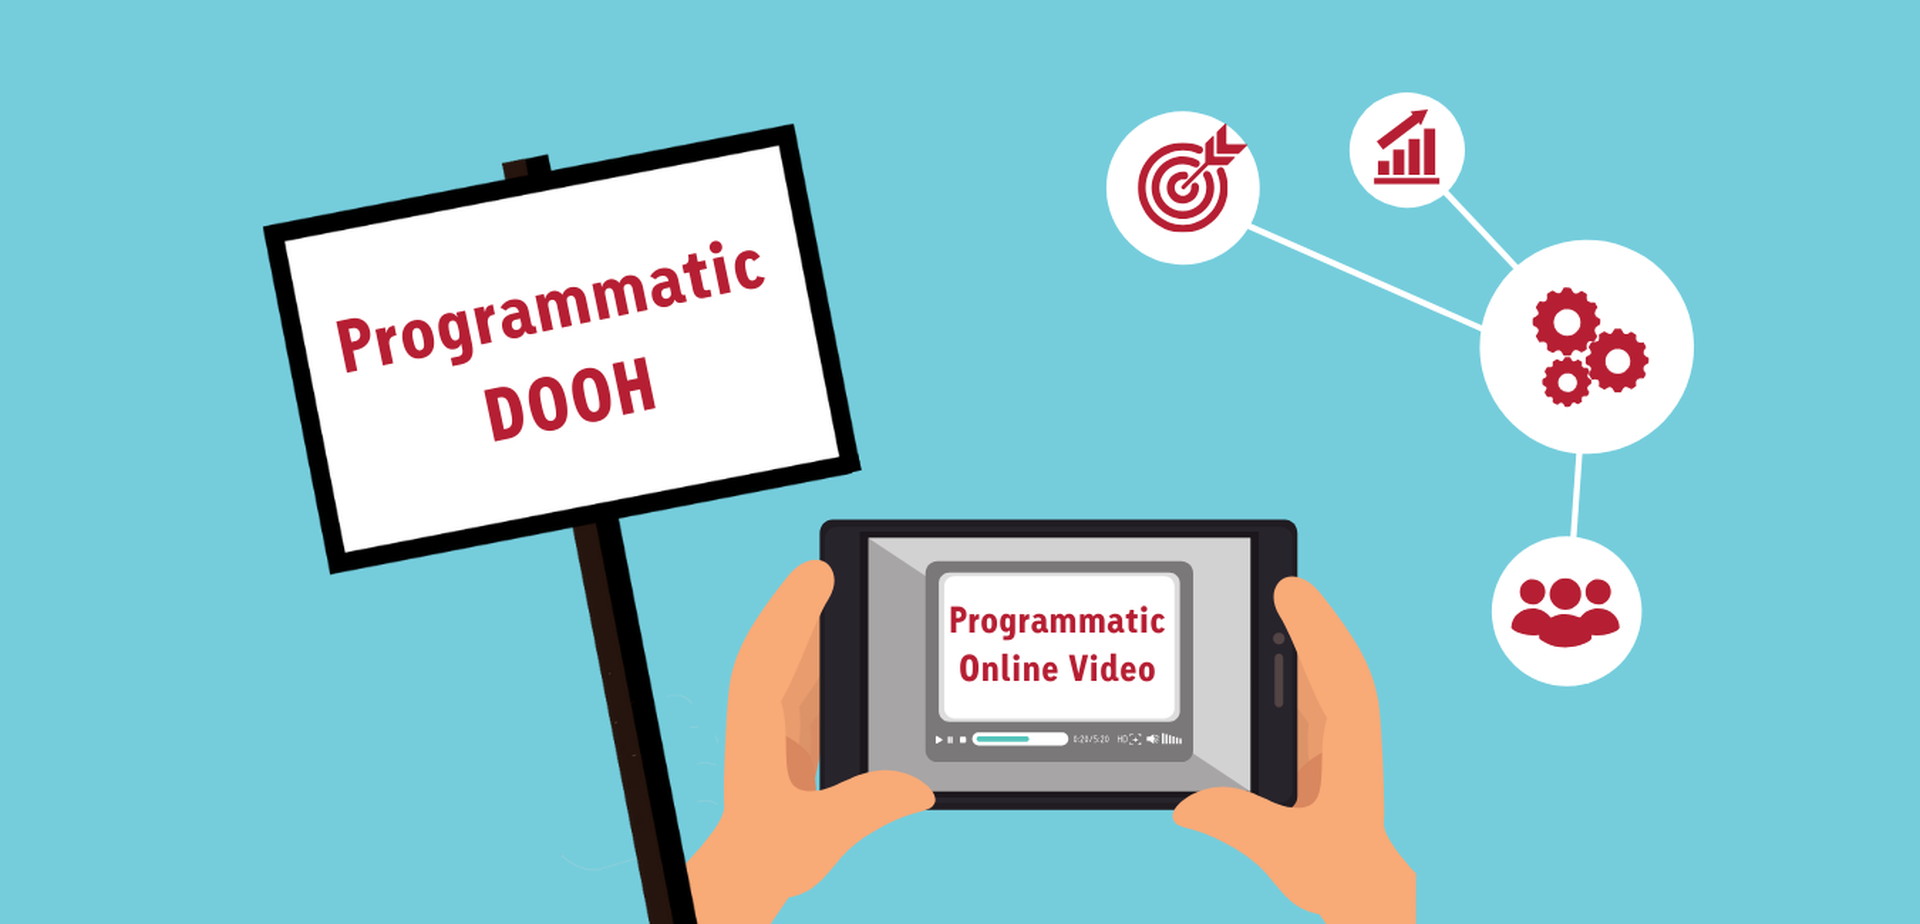 Grafik mit Screens, Icons und den Schriftzügen "Programmatic DOOH" und "Programmatic Online Video"